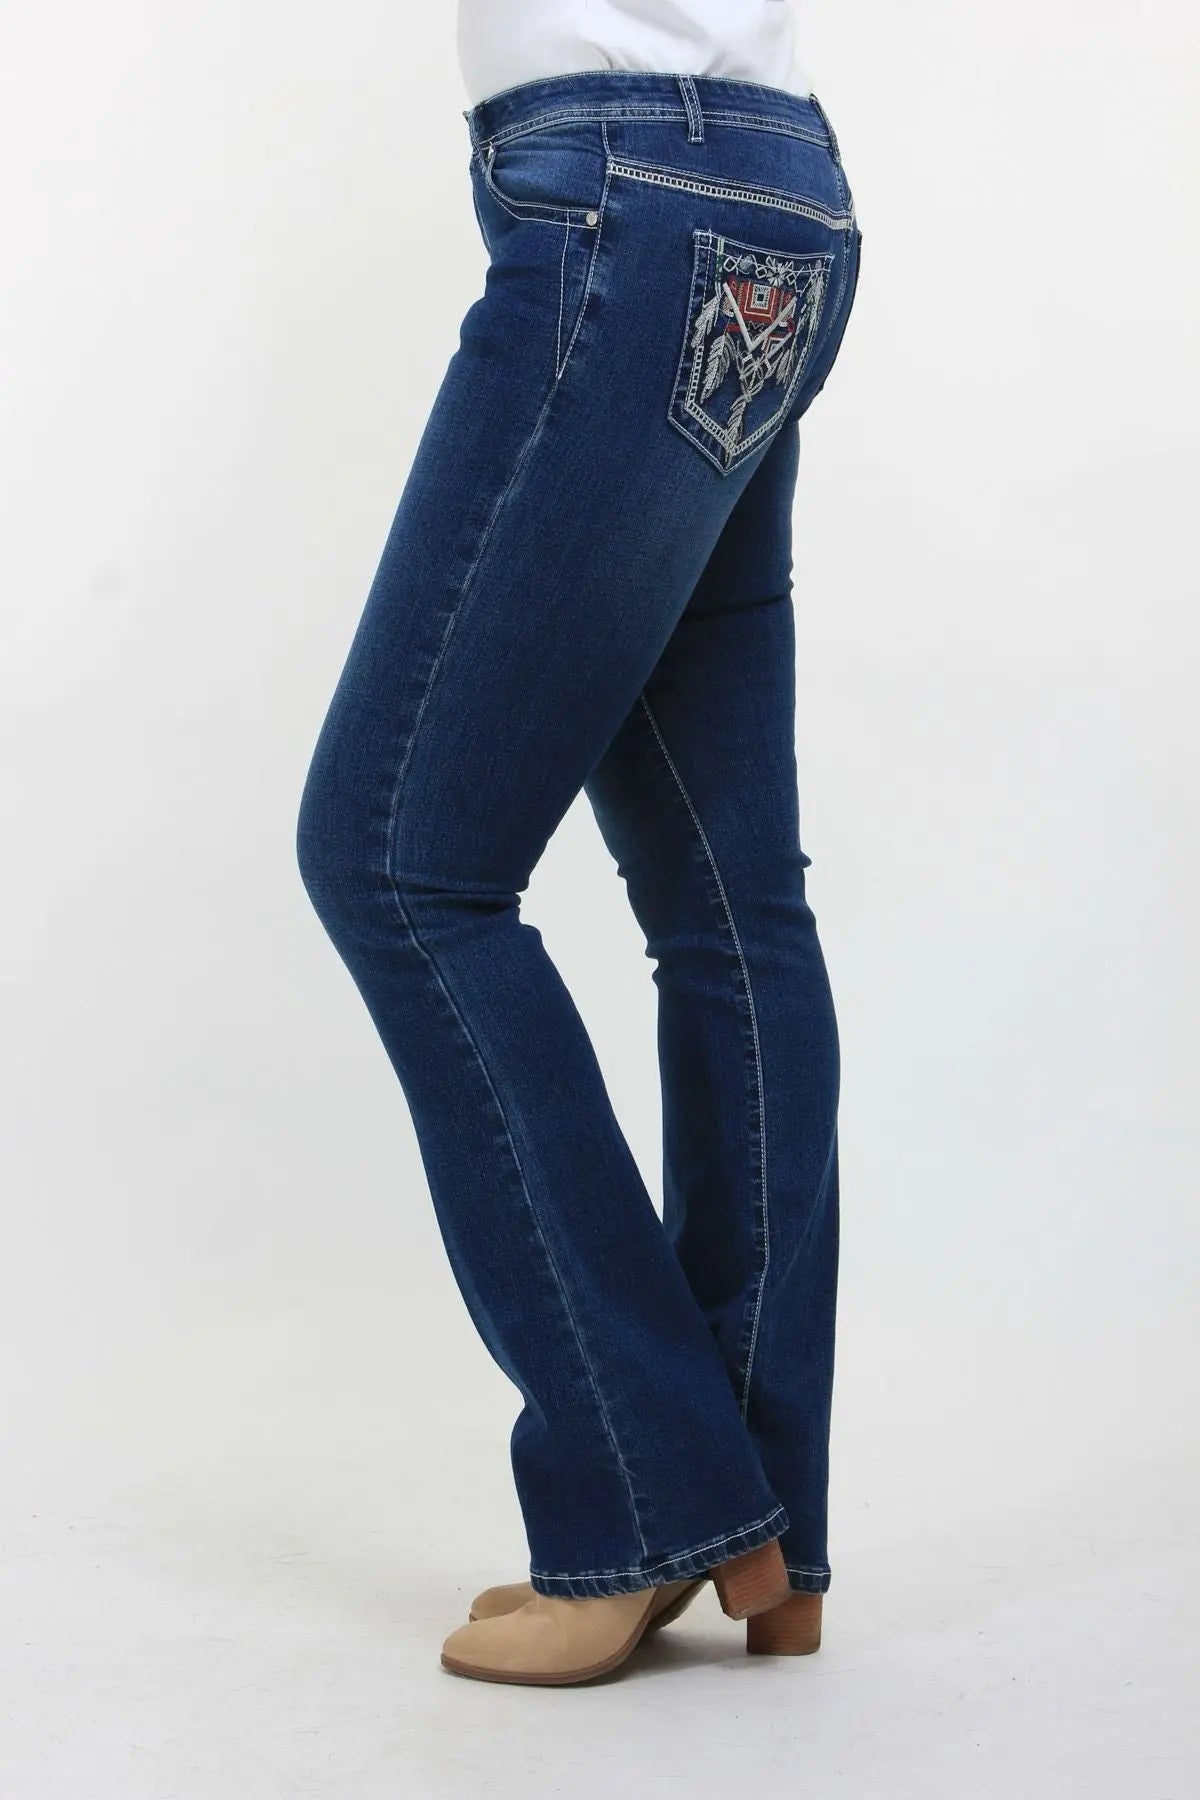 Embellished Denim Jeans Outback Supply Co